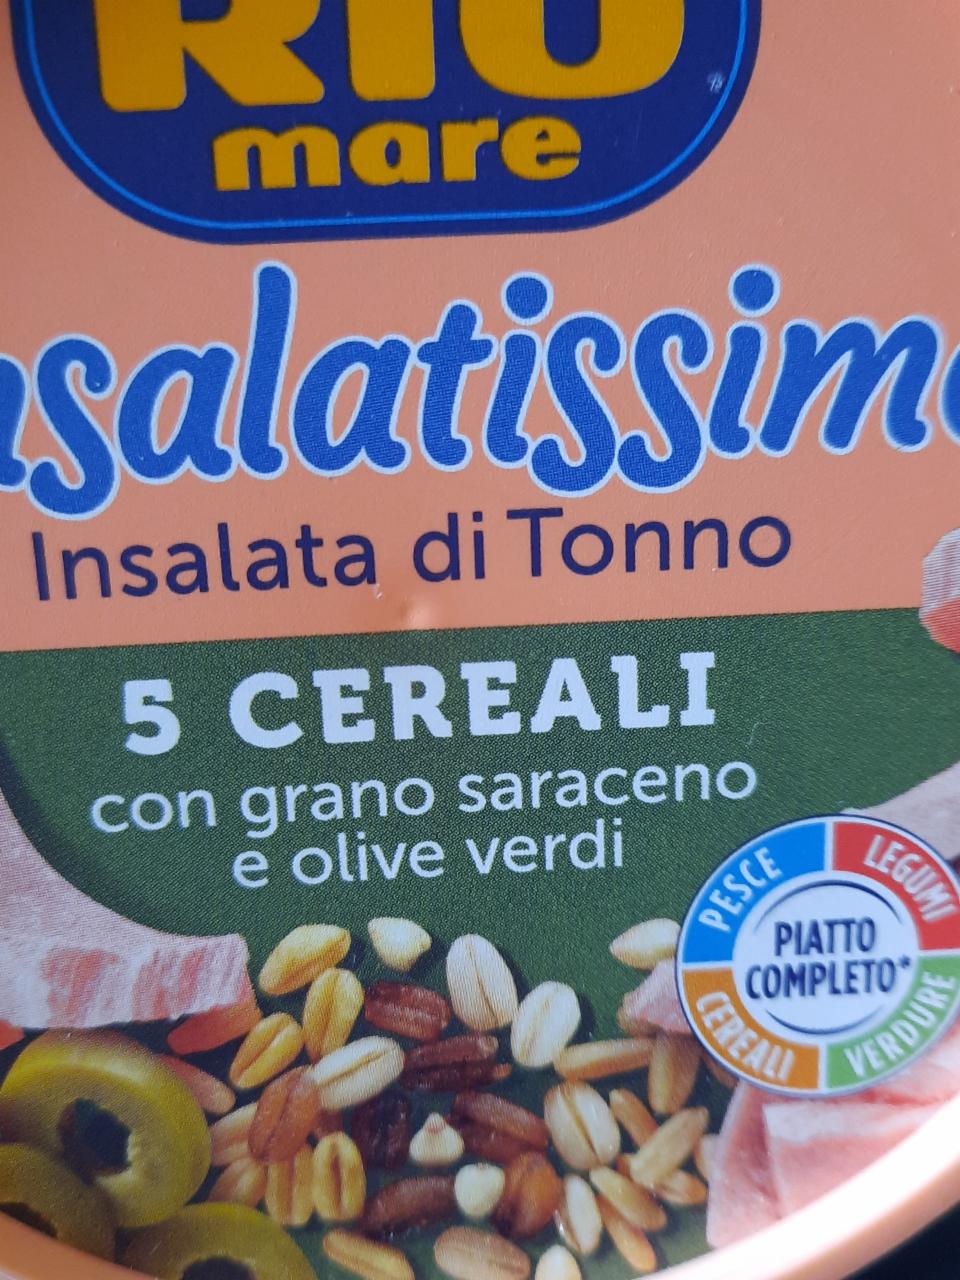 Fotografie - Insalatissime Insalata di Tonno 5 Cereali con grano saraceno e olive verdi Rio mare